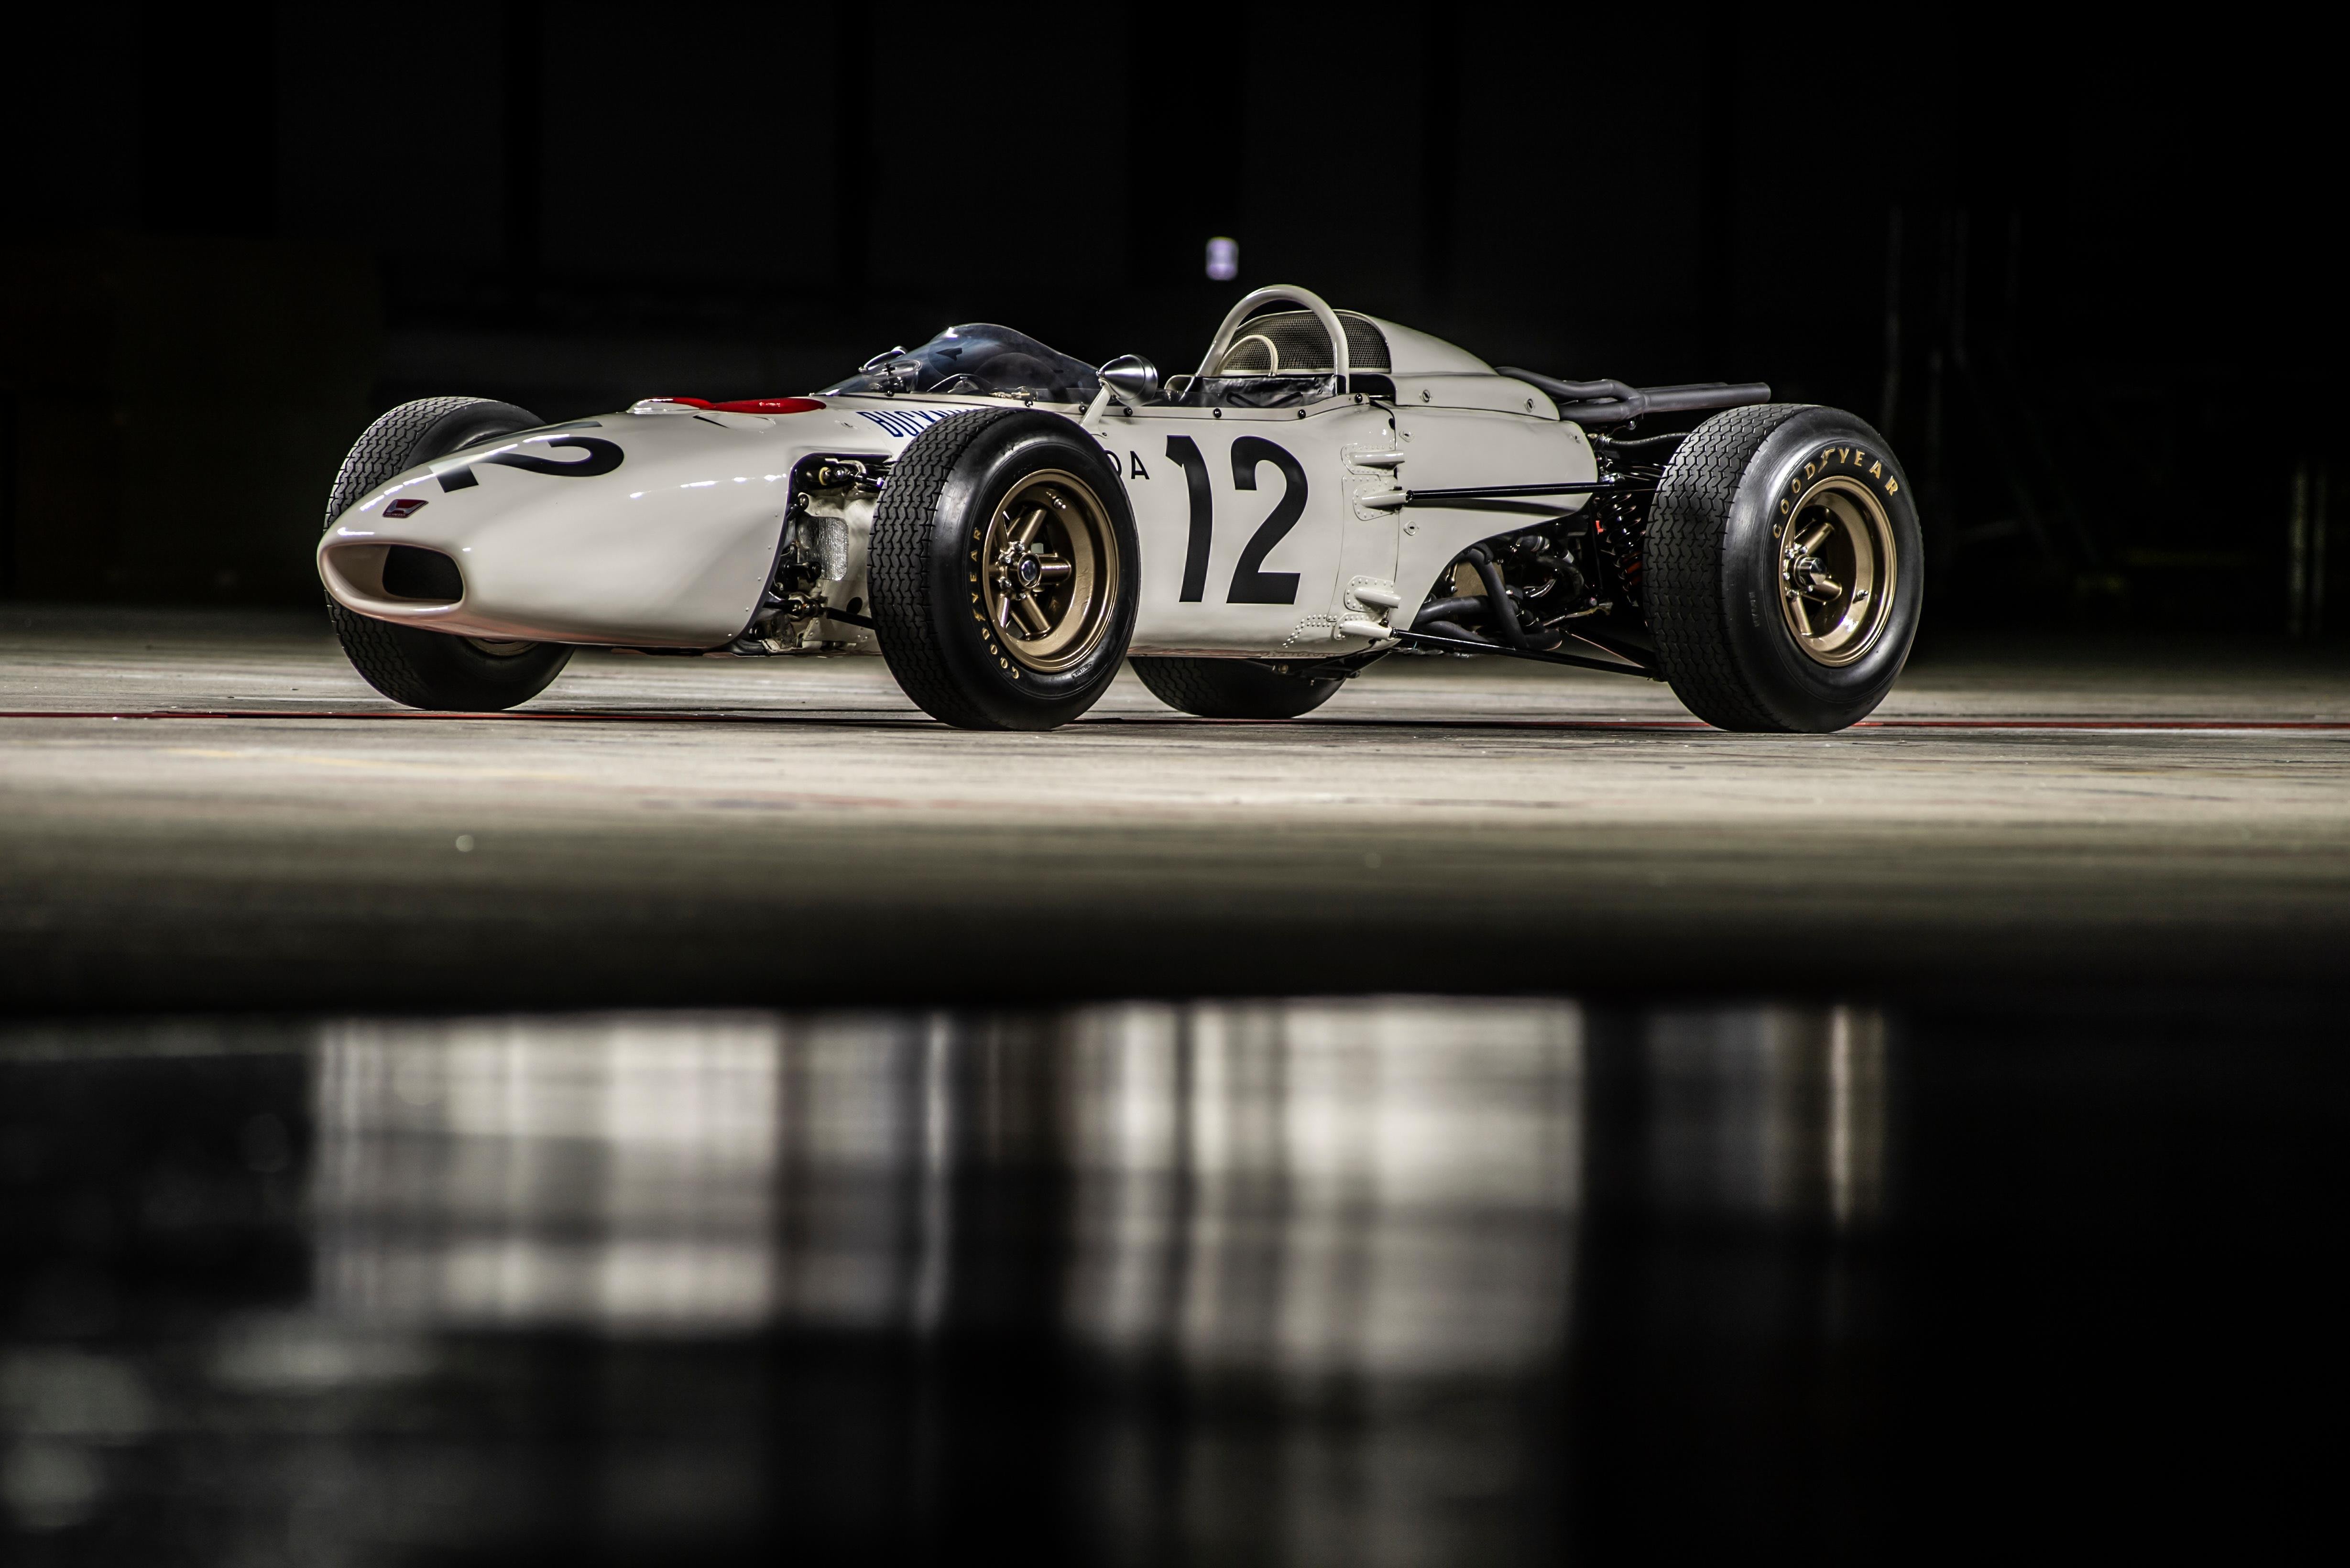 F1日本GP特別企画】マックス・フェルスタッペンがホンダRA272をドライブ。